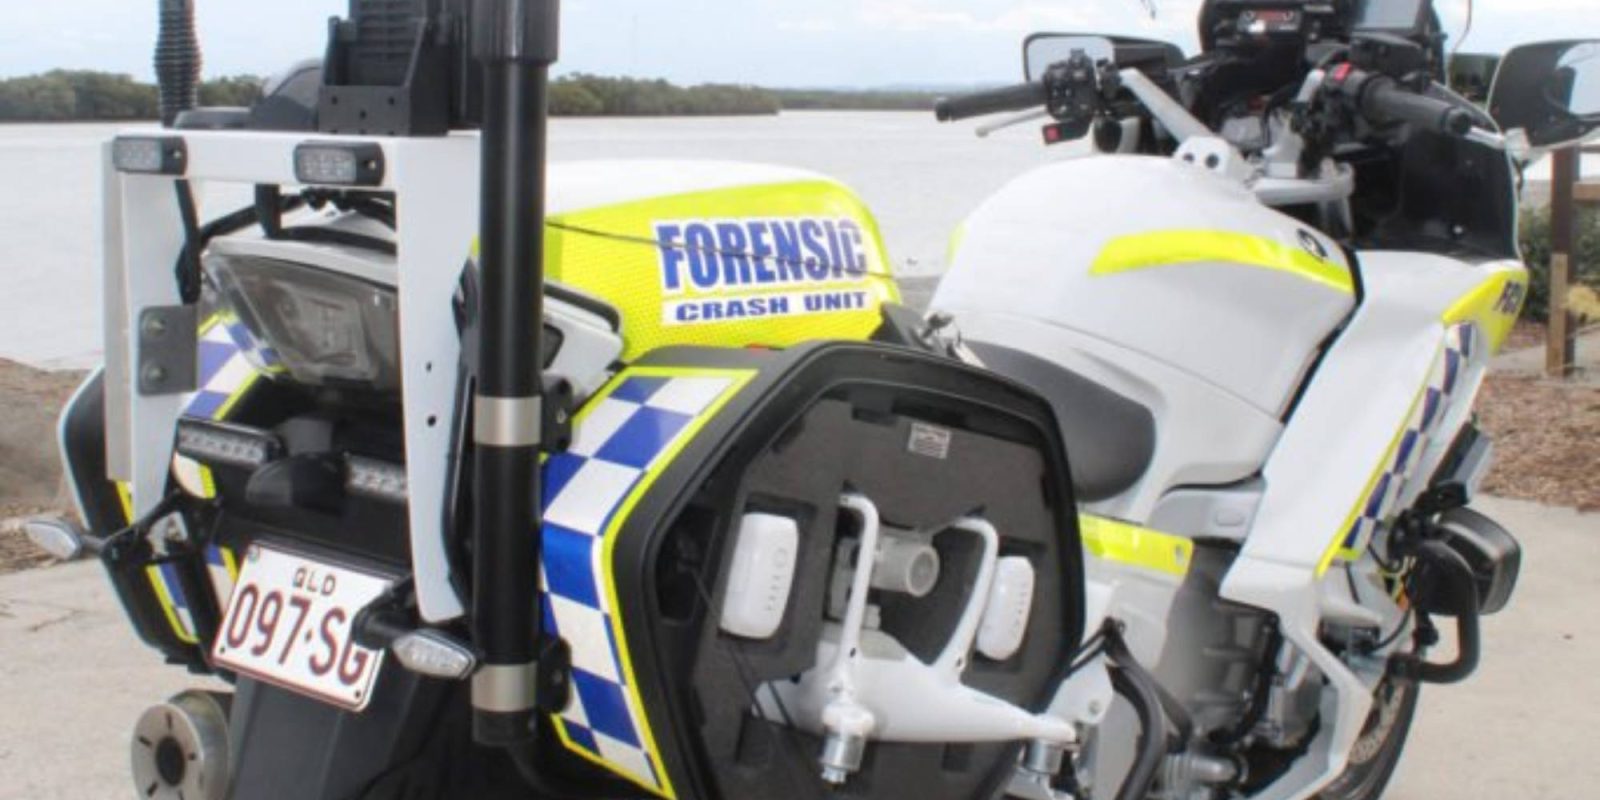 Queensland police motorbikes DJI drones